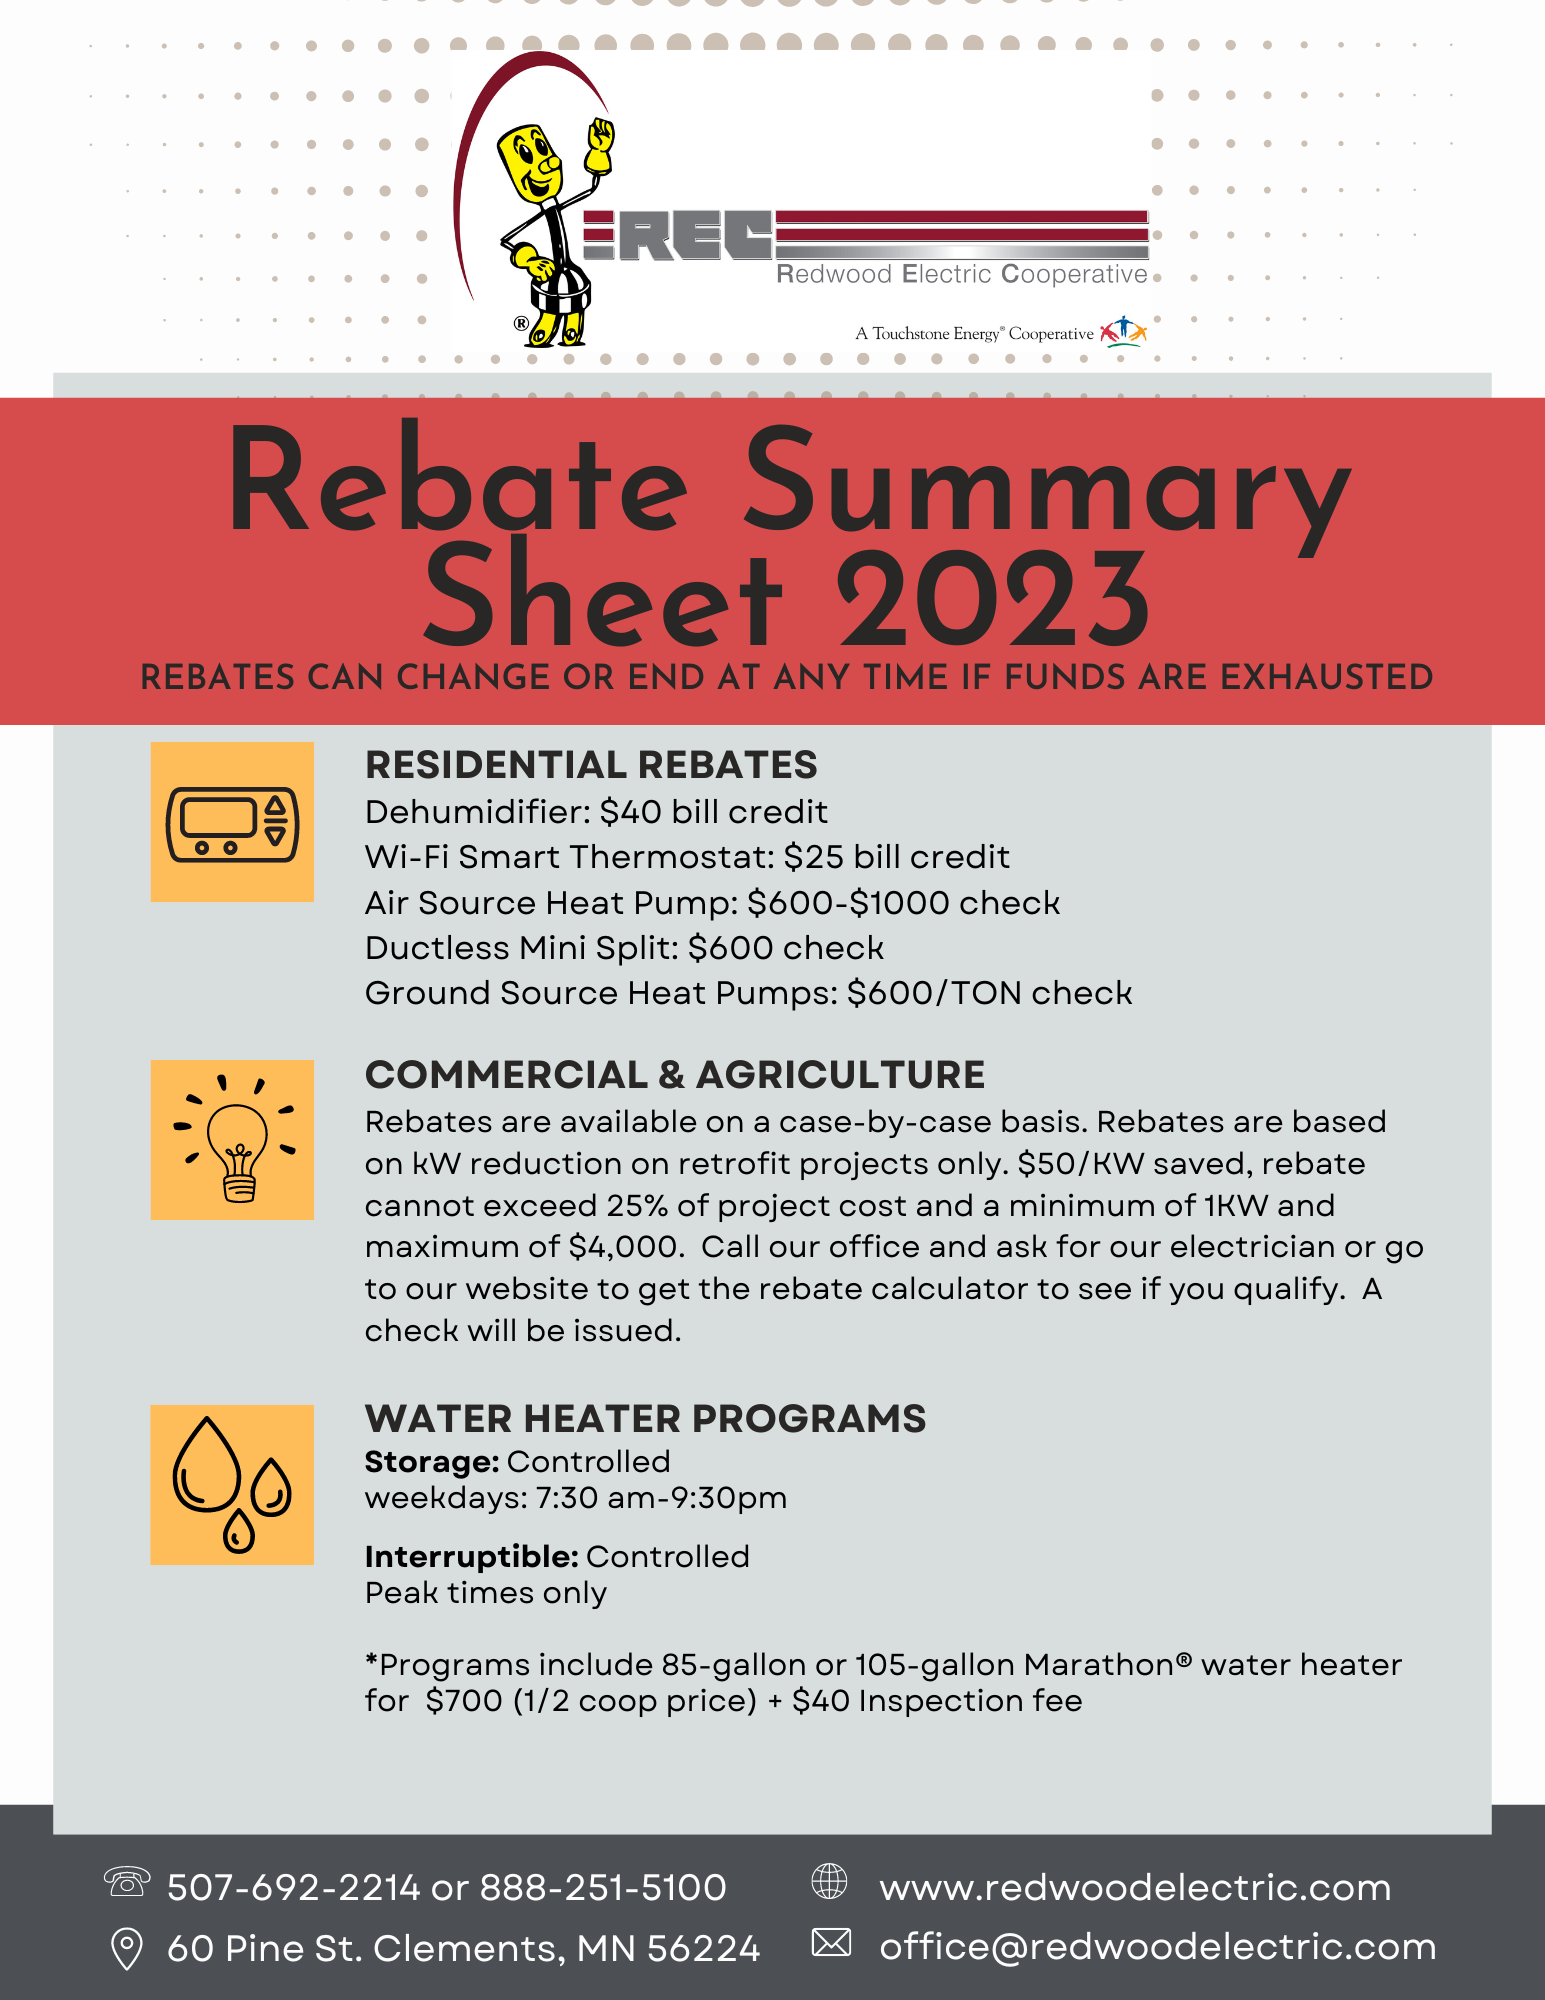 rebate-programs-redwood-electric-cooperative